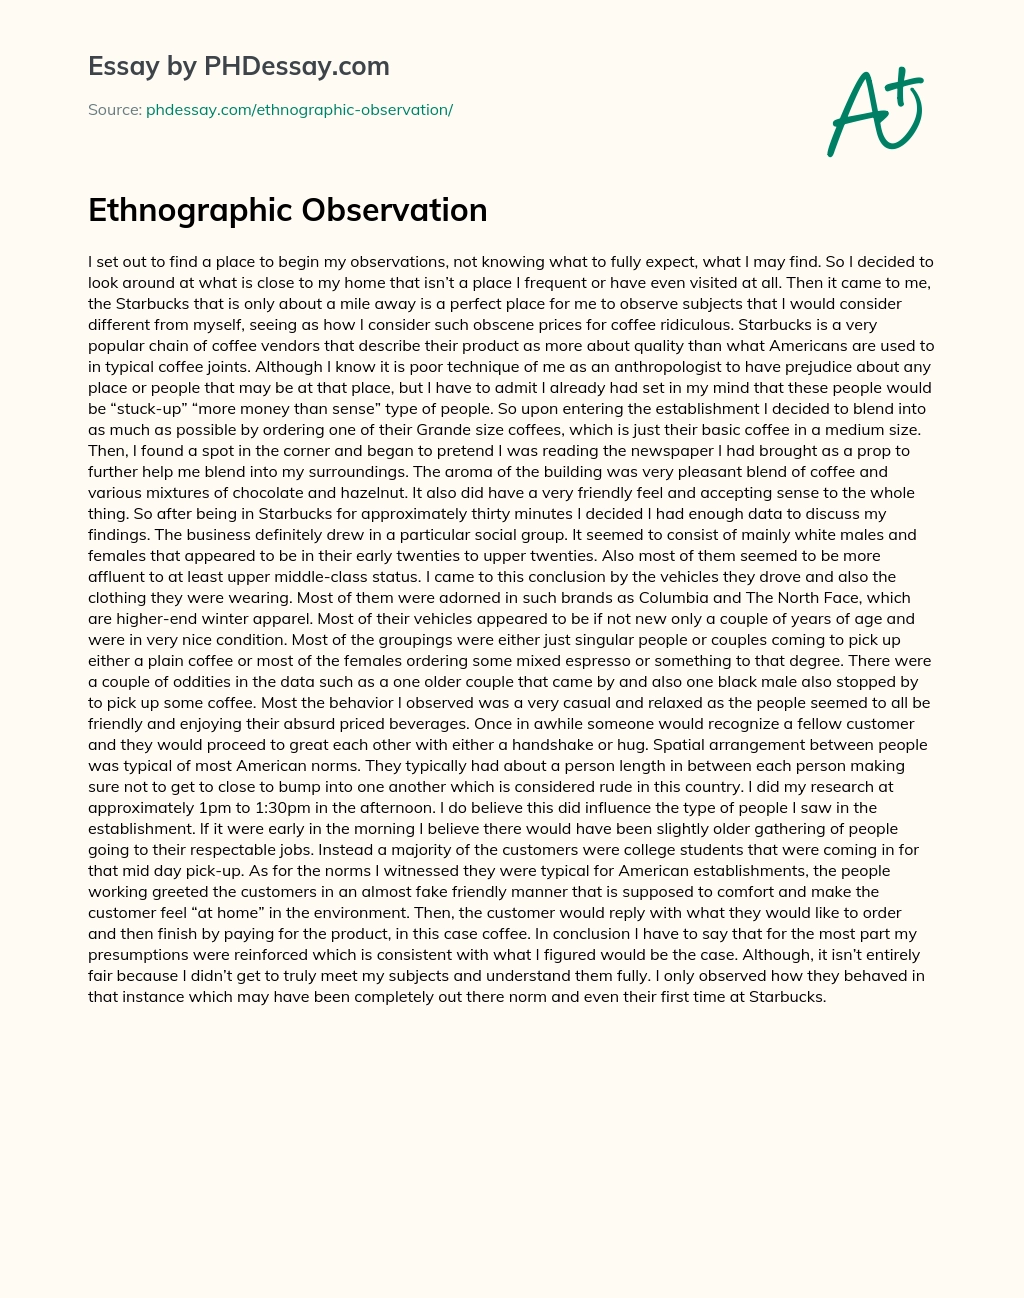 Ethnographic Observation essay